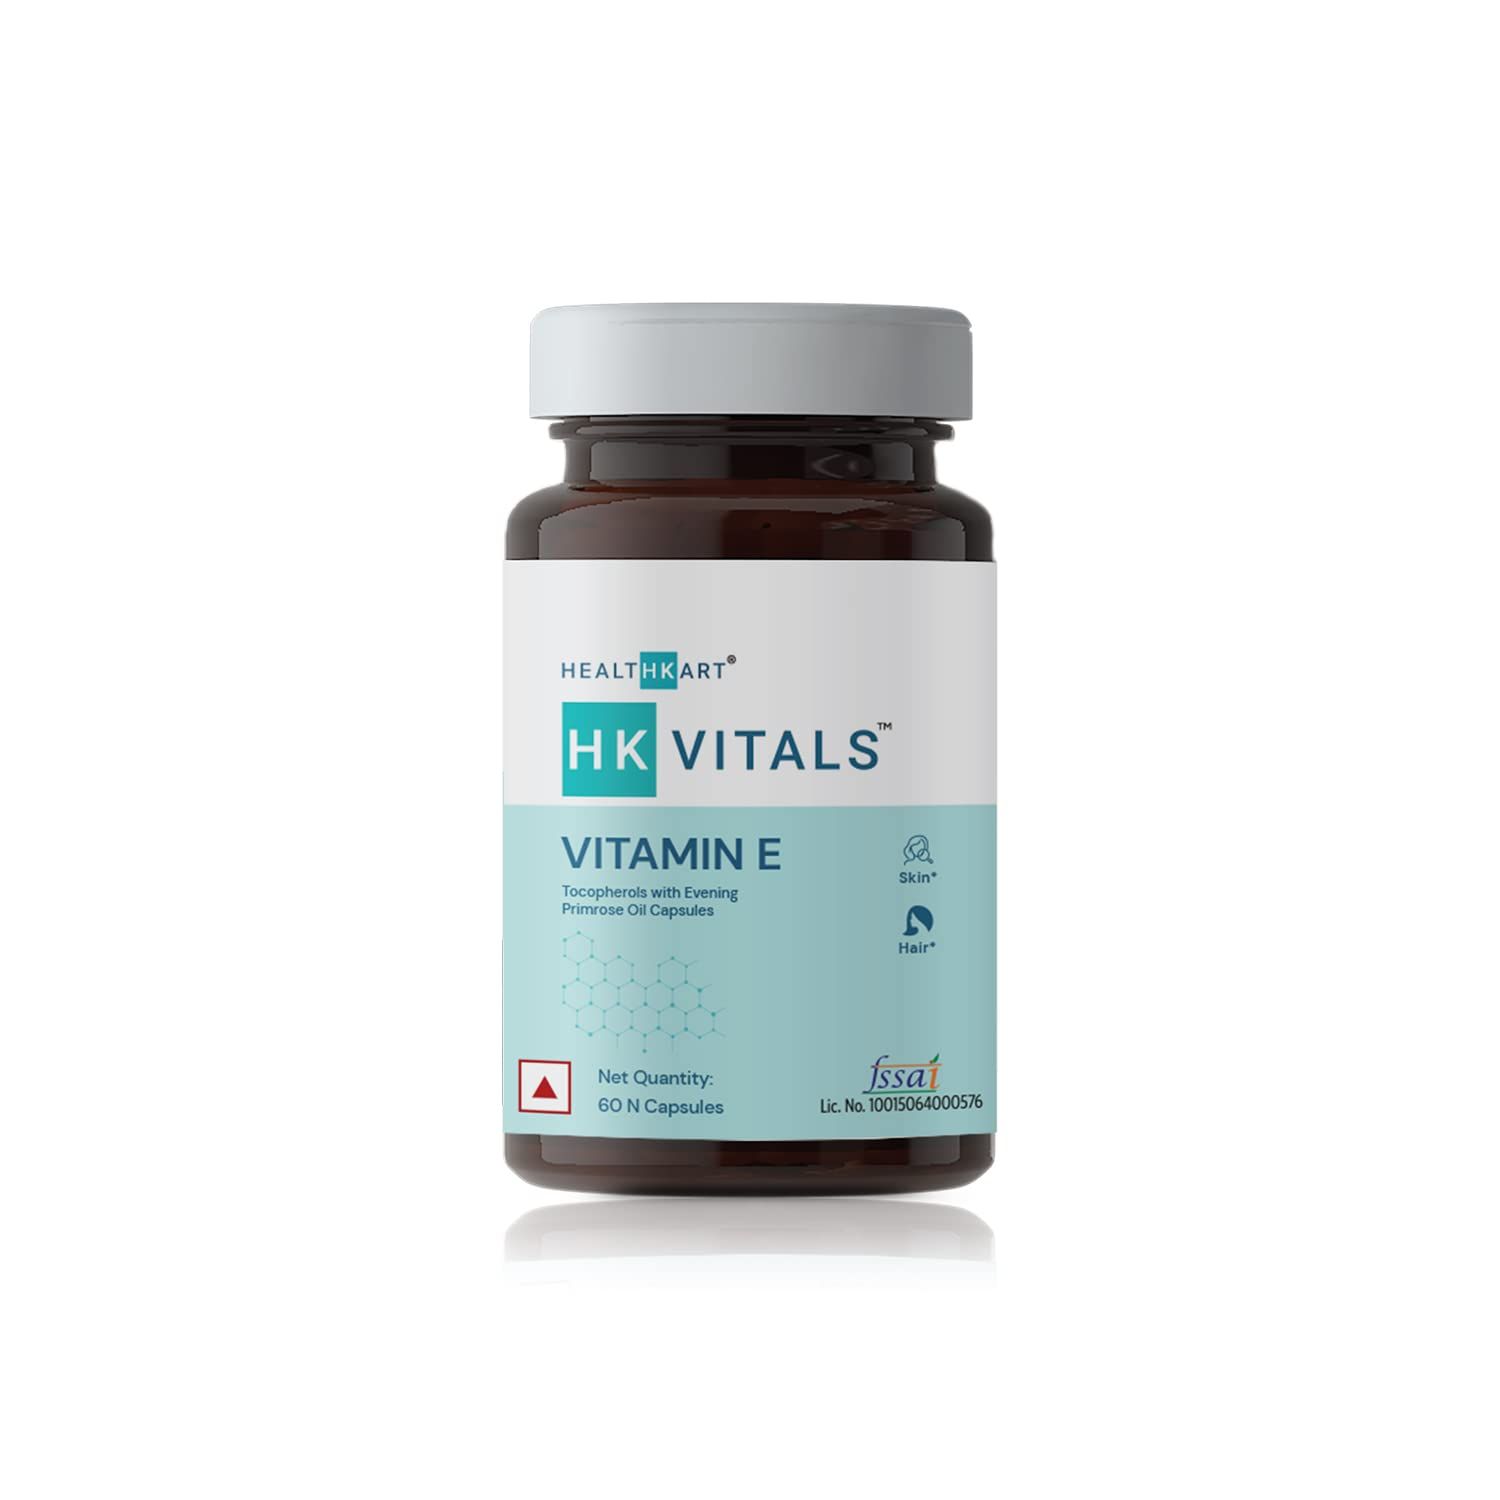 HK Vitals Vitamin E Capsules Image